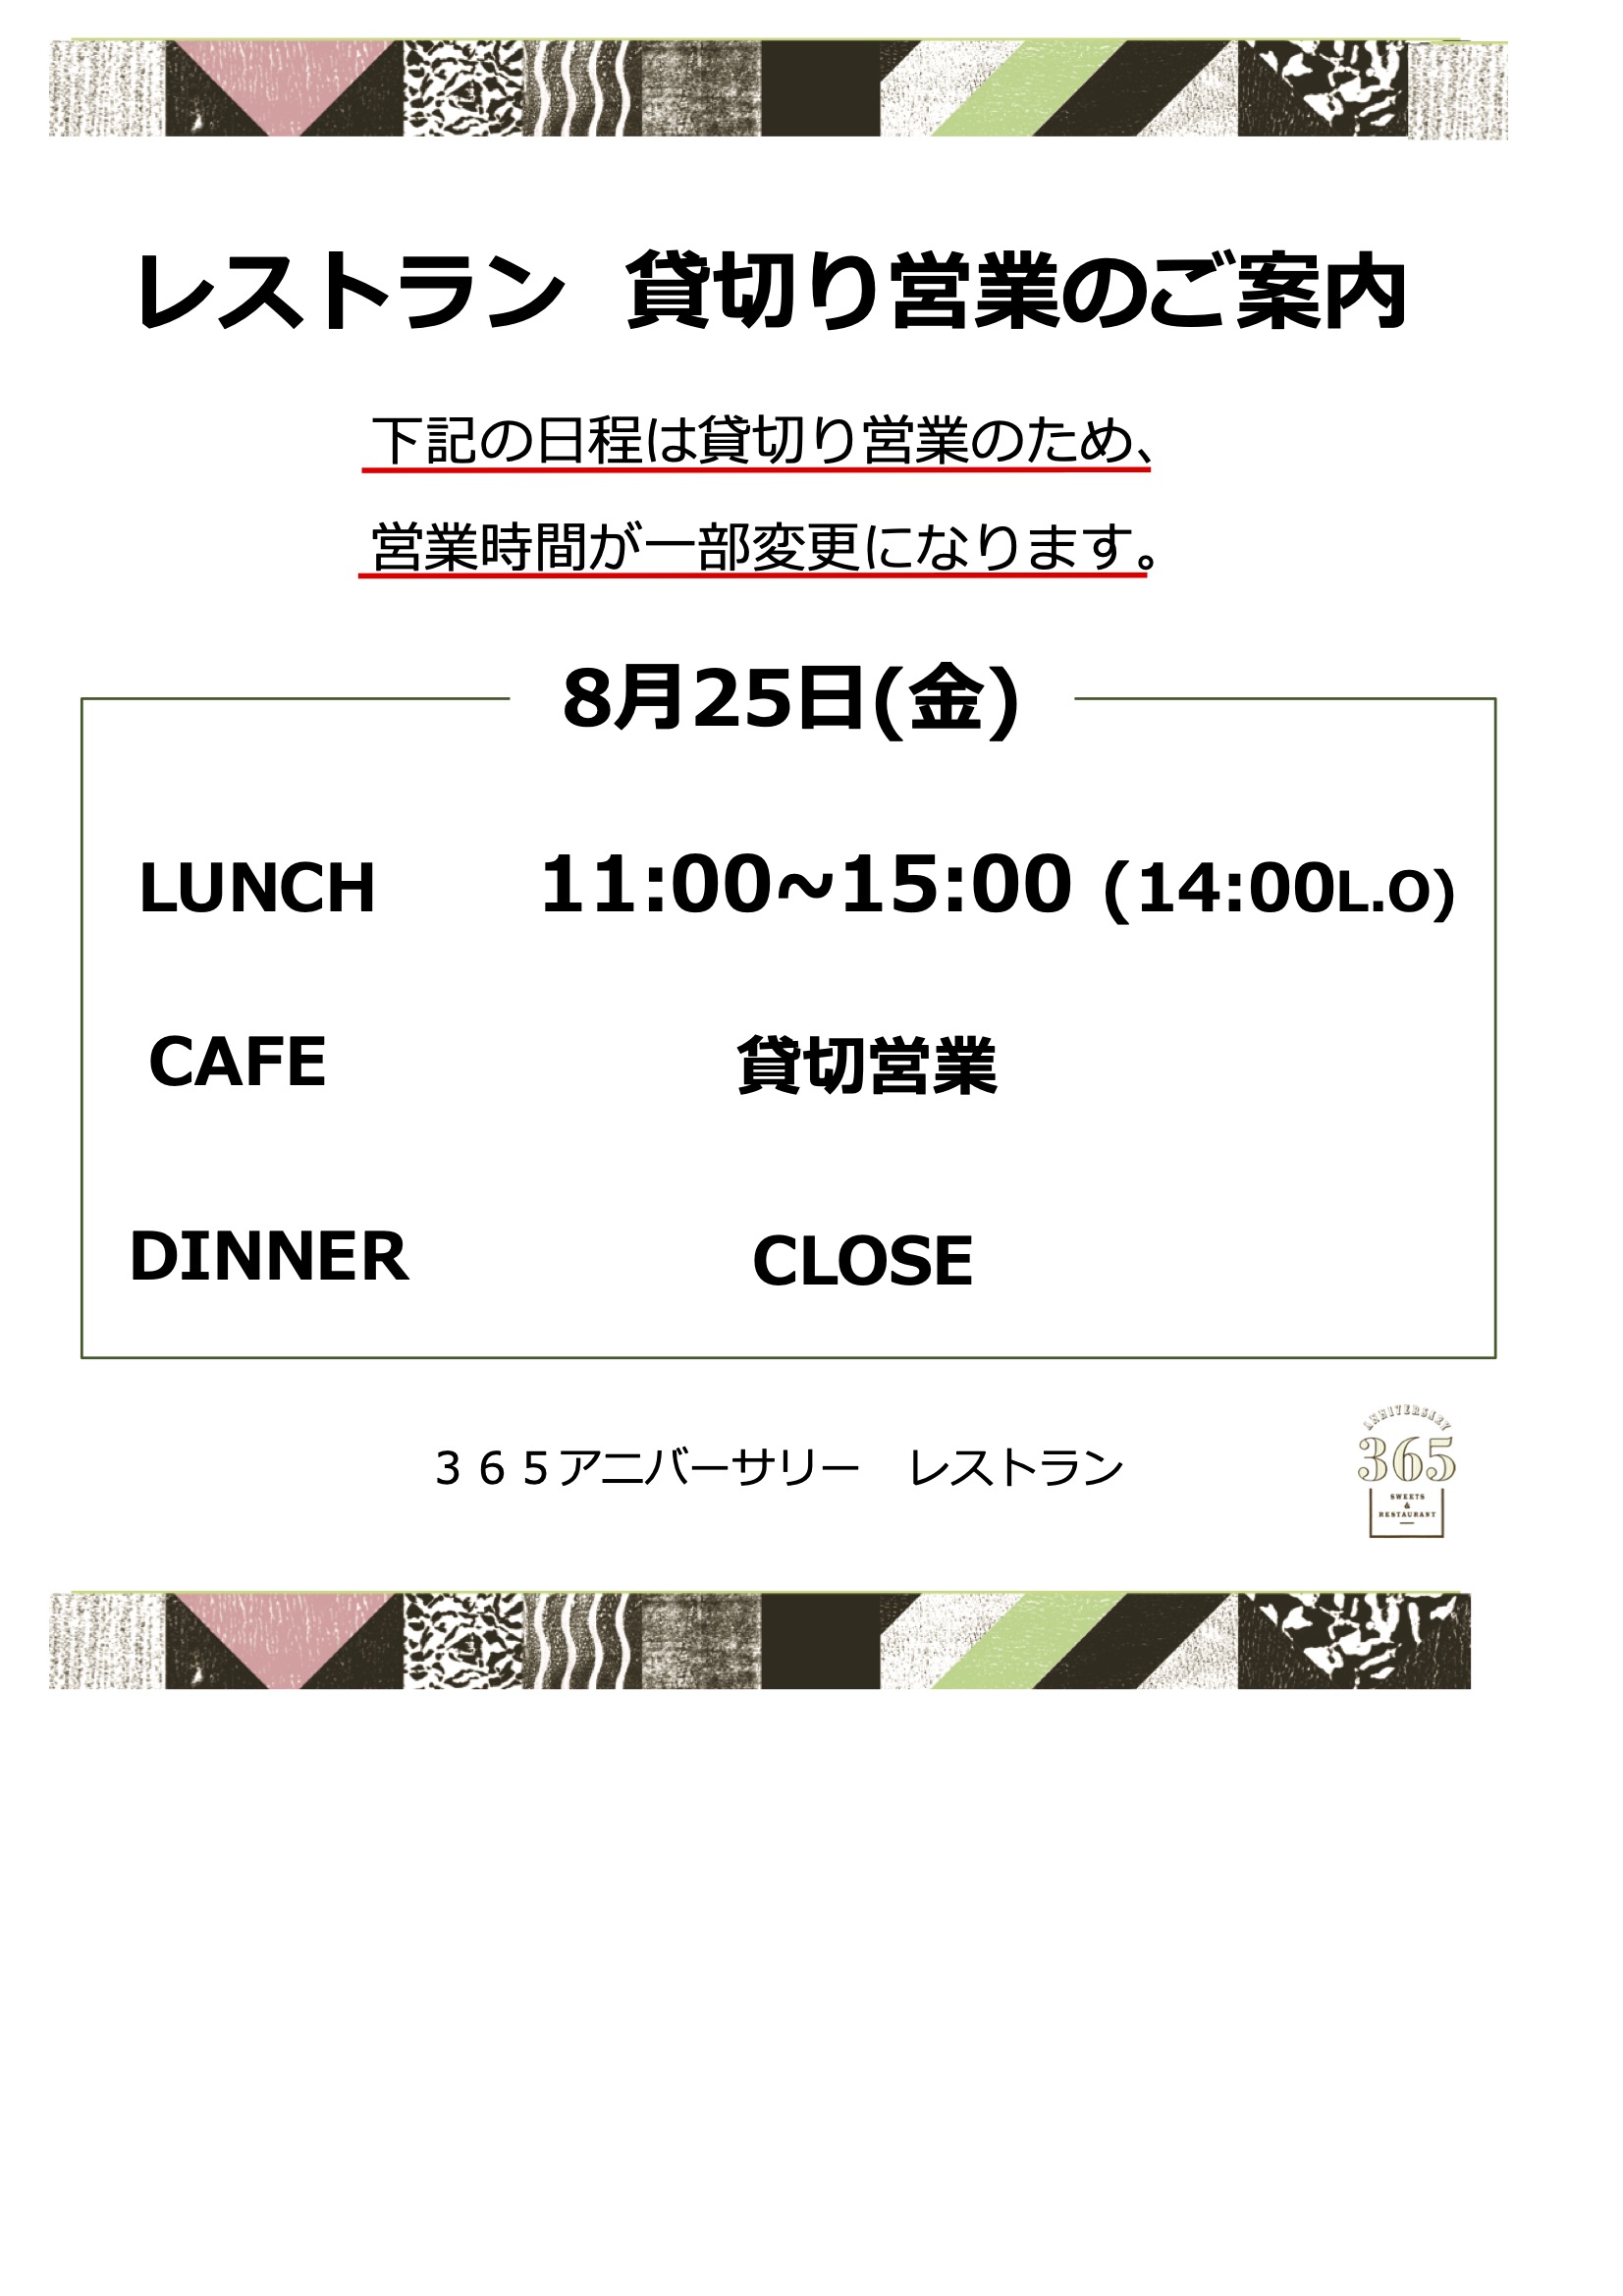 8月25日(金)レストラン営業時間変更のお知らせ